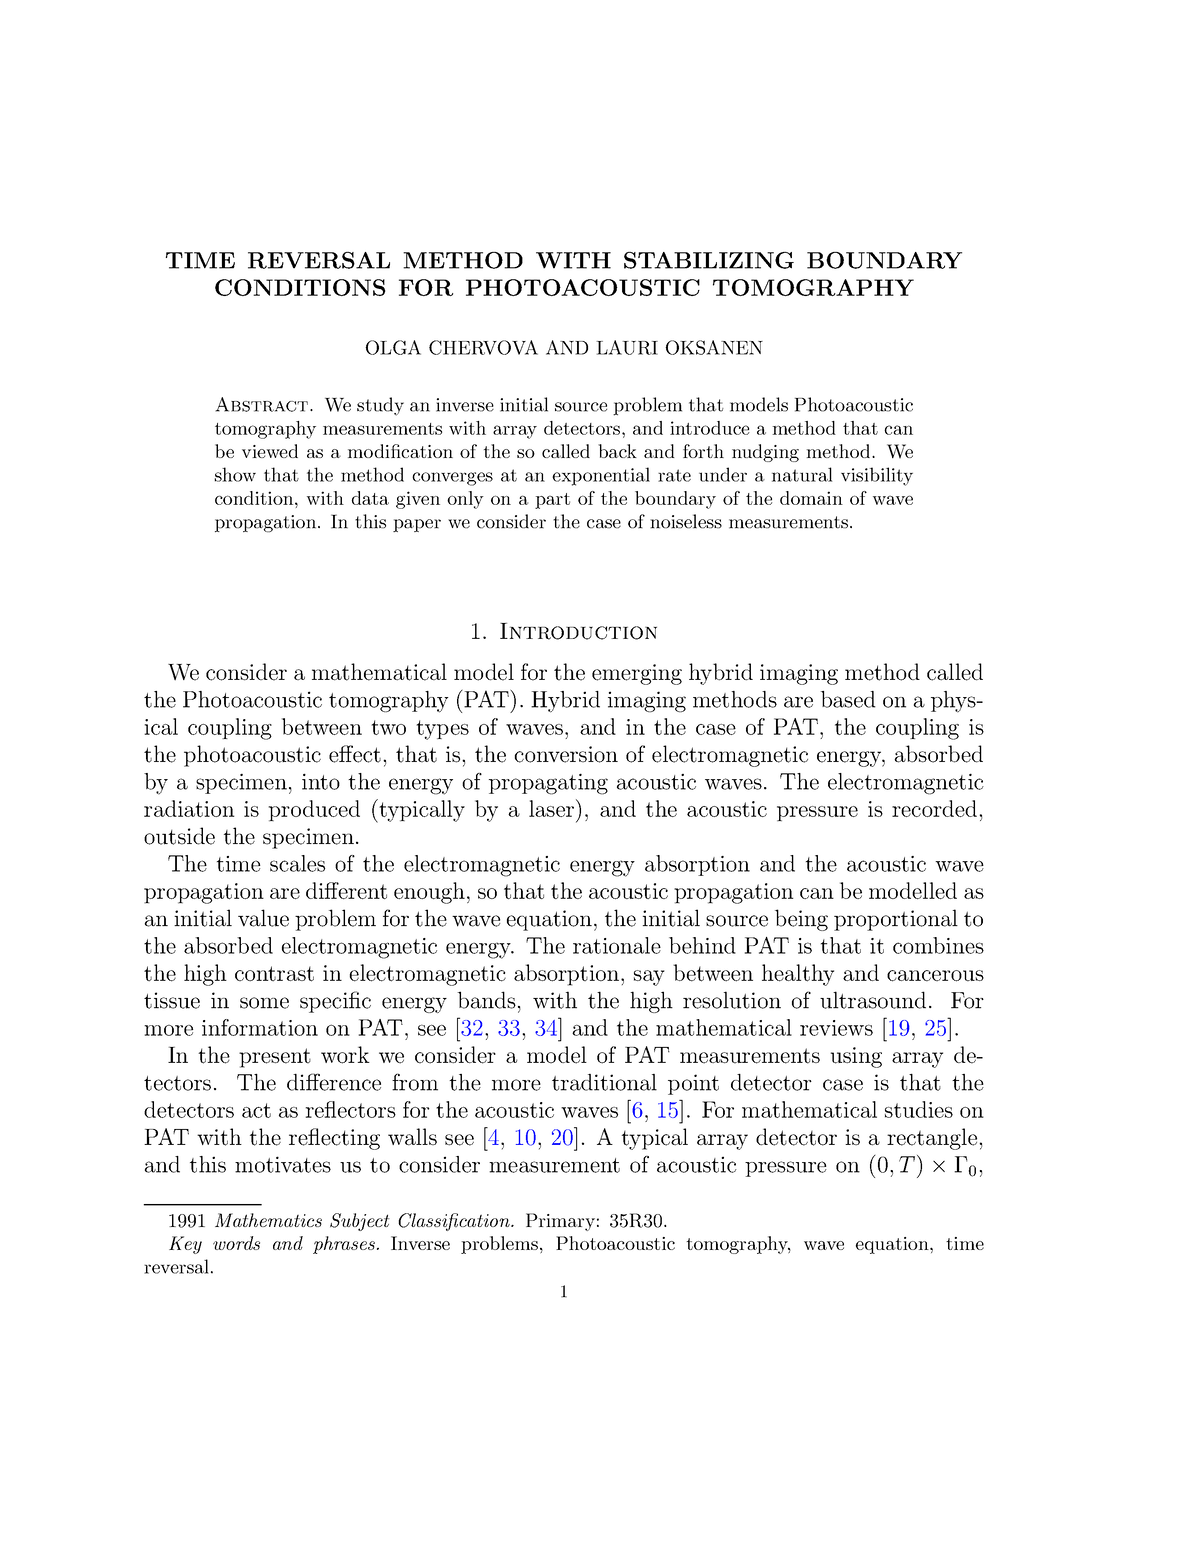 Time-reversal-stabilizing - RNSG 1341 - Blinn College - Studocu